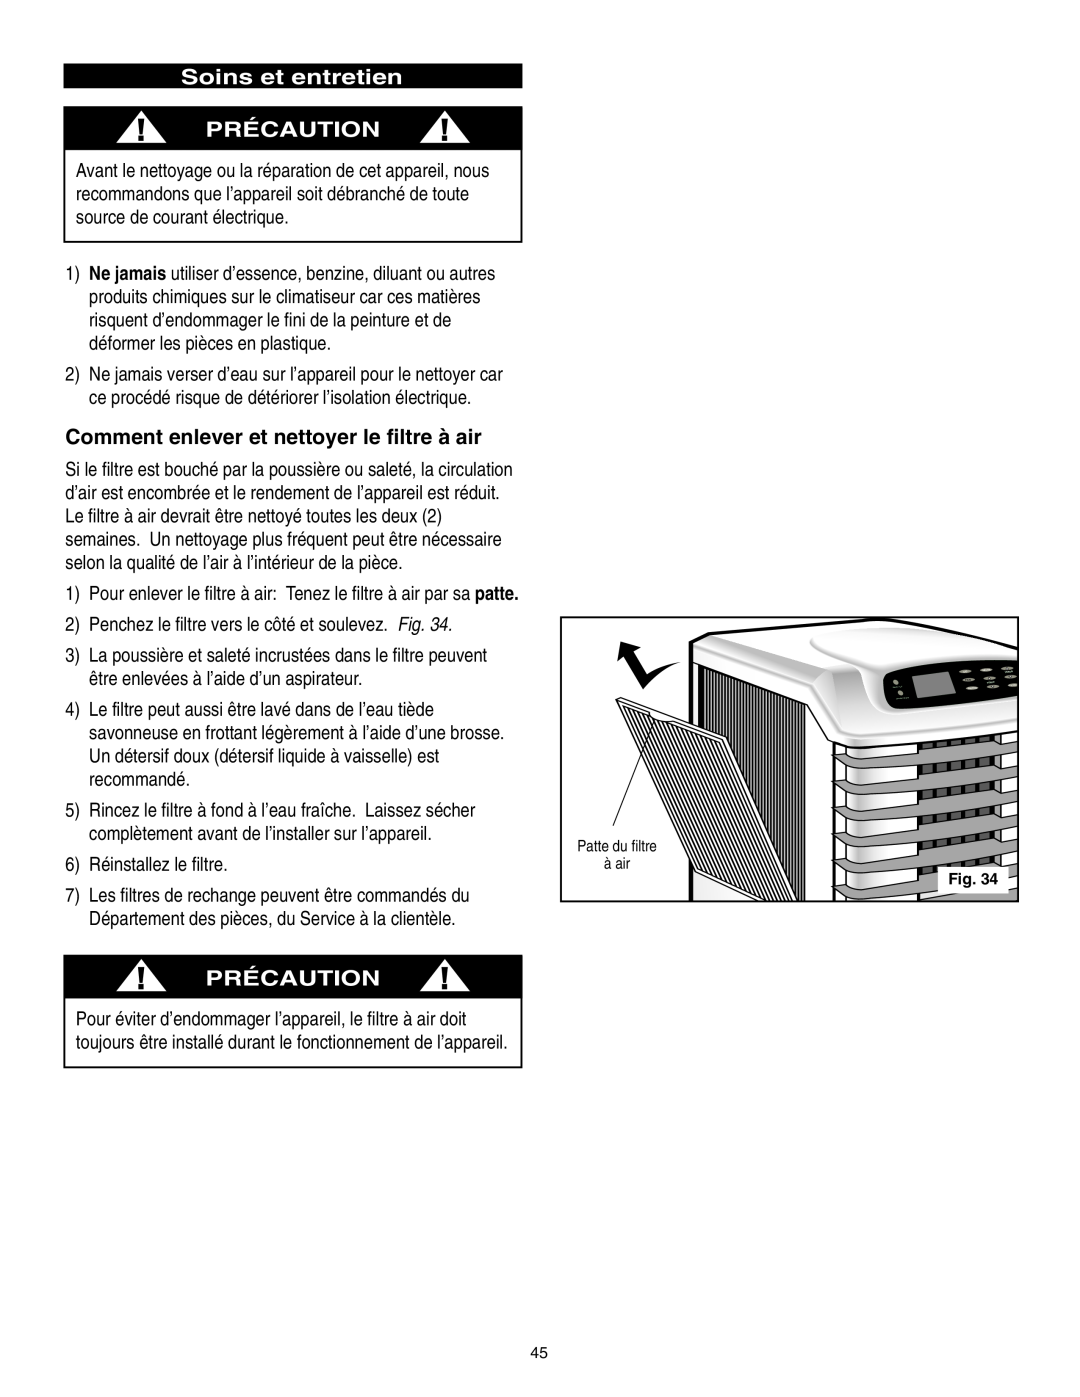 Danby SPAC8499 manual Soins et entretien PRÉCAUTION, Comment enlever et nettoyer le filtre à air, Précaution 